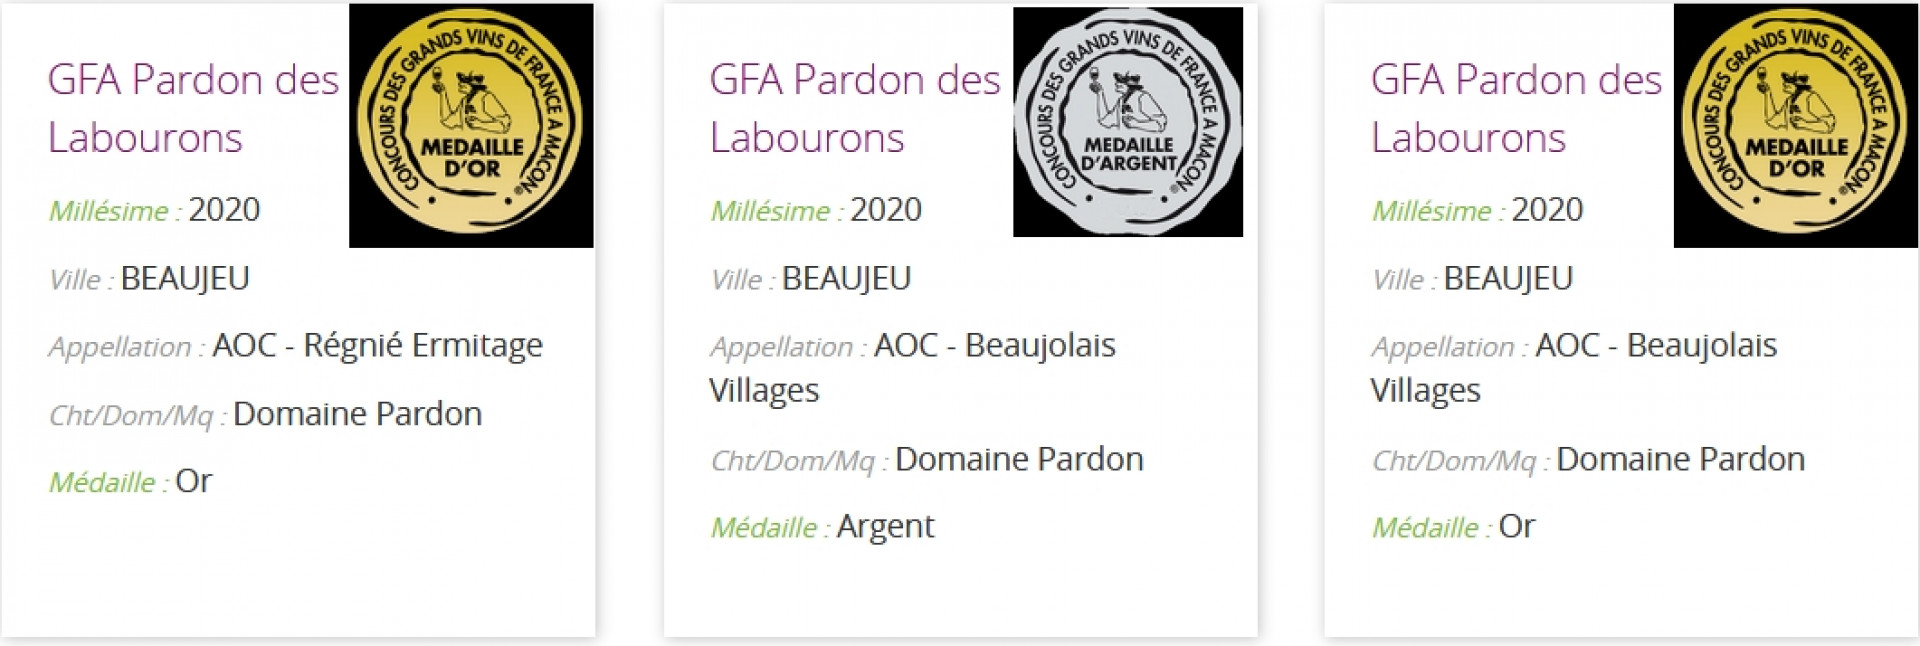 Concours des Grands Vins de France à Mâcon 2021